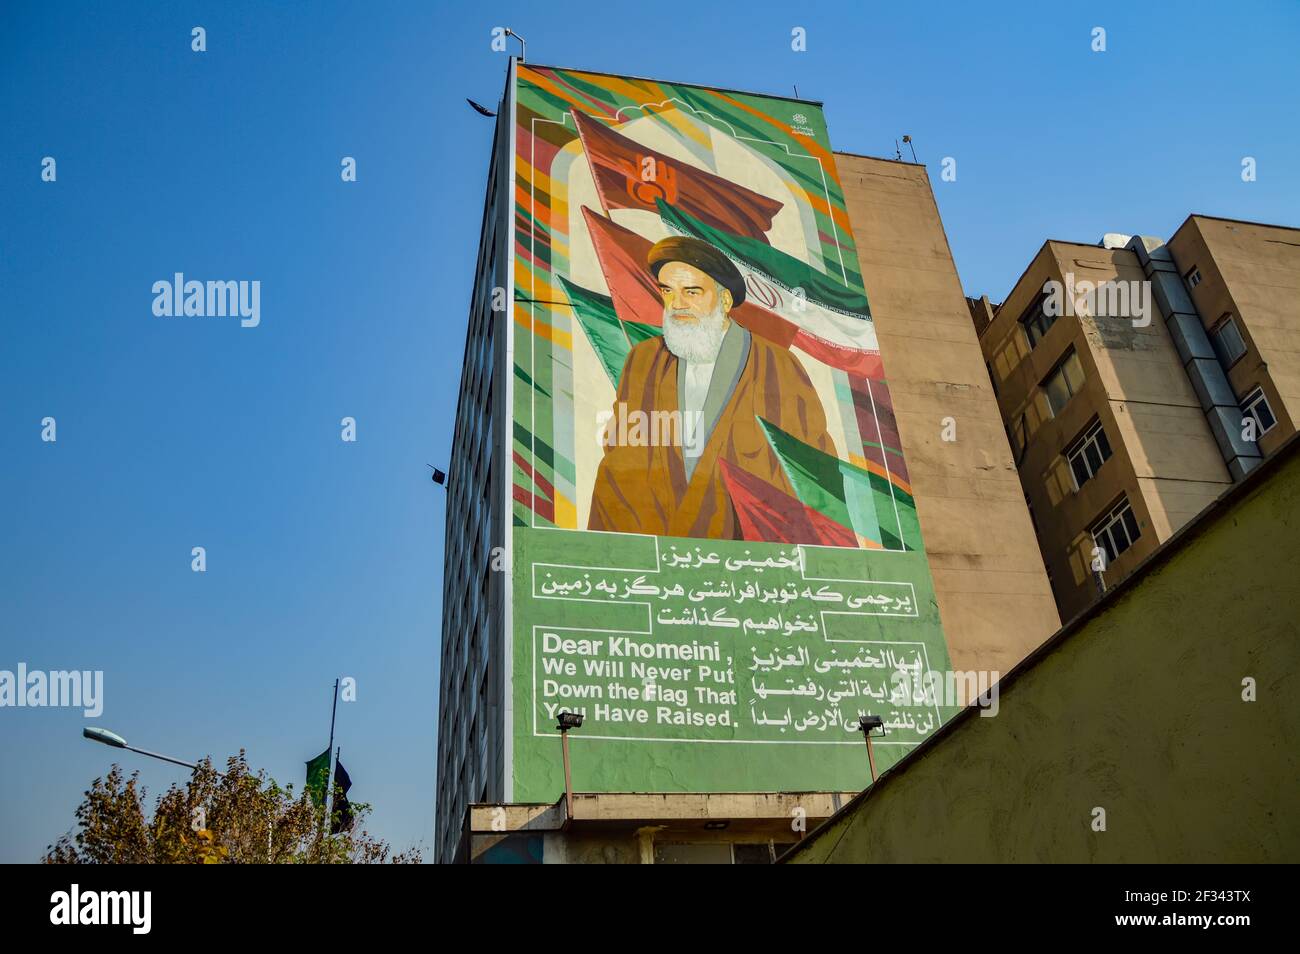 Teheran, Iran - 22. November 2015: Ein großes Wandgemälde auf einem der Gebäude in Teheran, das Imam Khomeini, den Führer der islamischen Revolution, darstellt Stockfoto